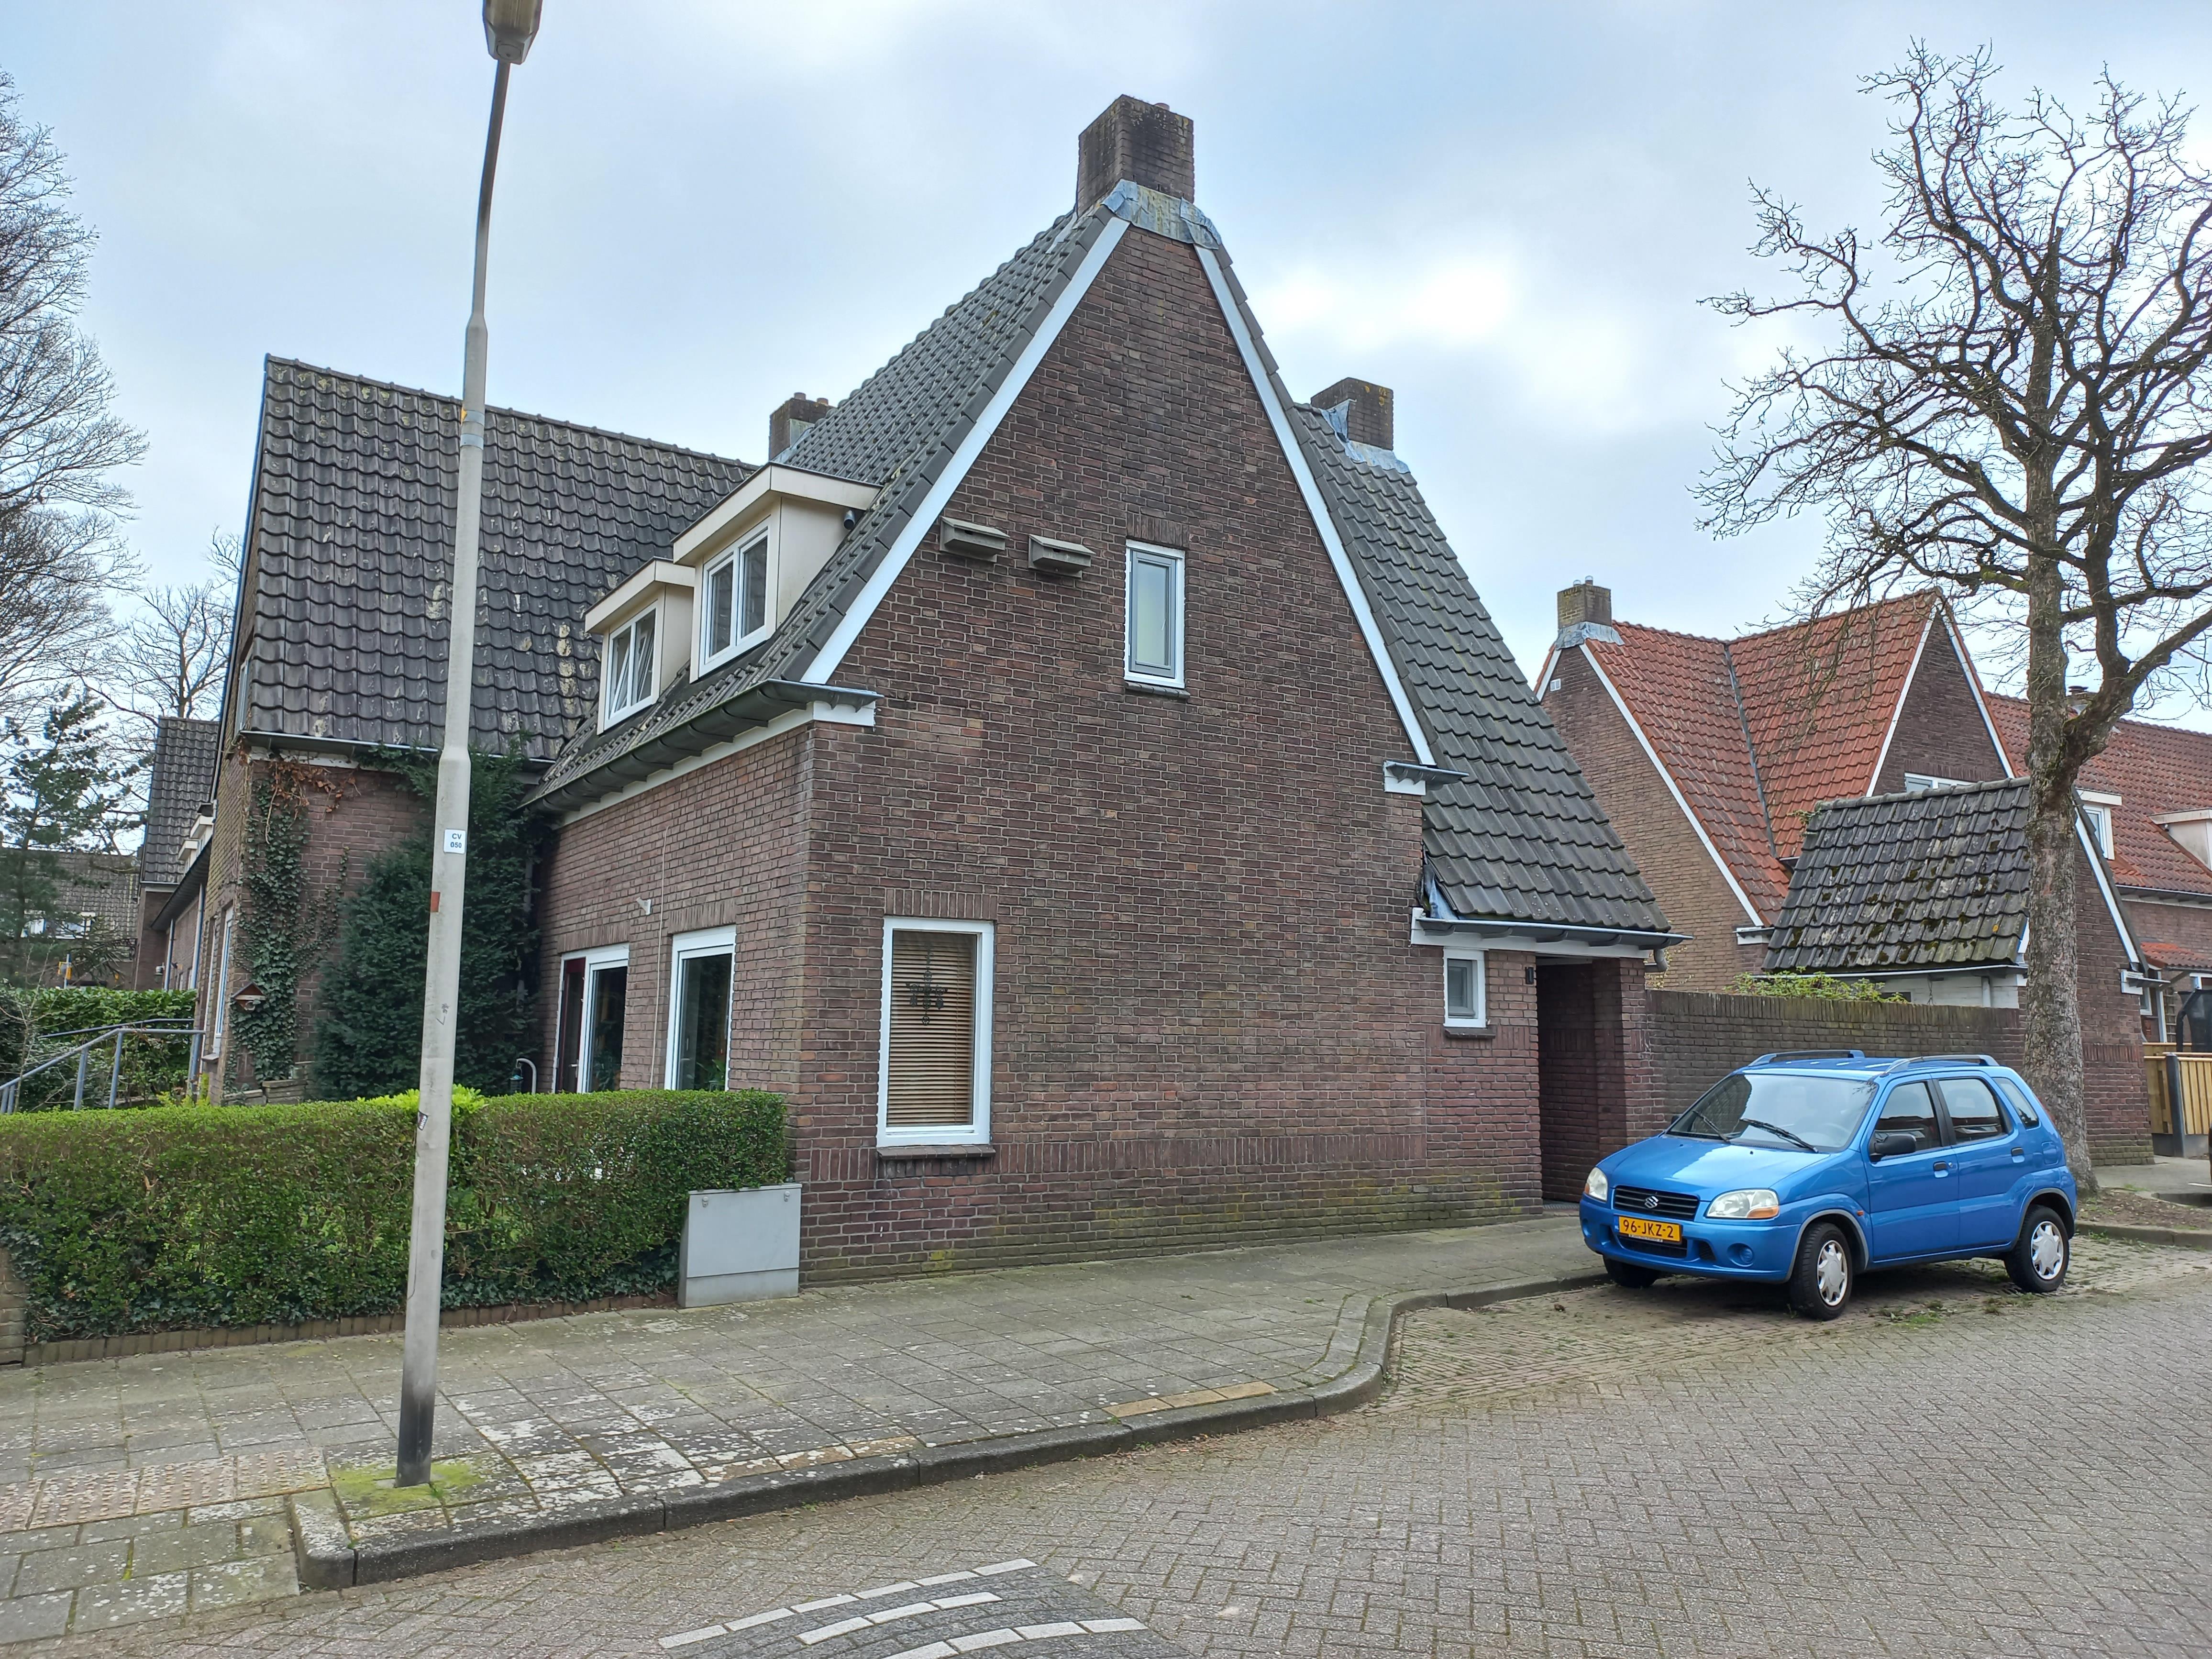 Hazelaarstraat 1, 6523 GA Nijmegen, Nederland